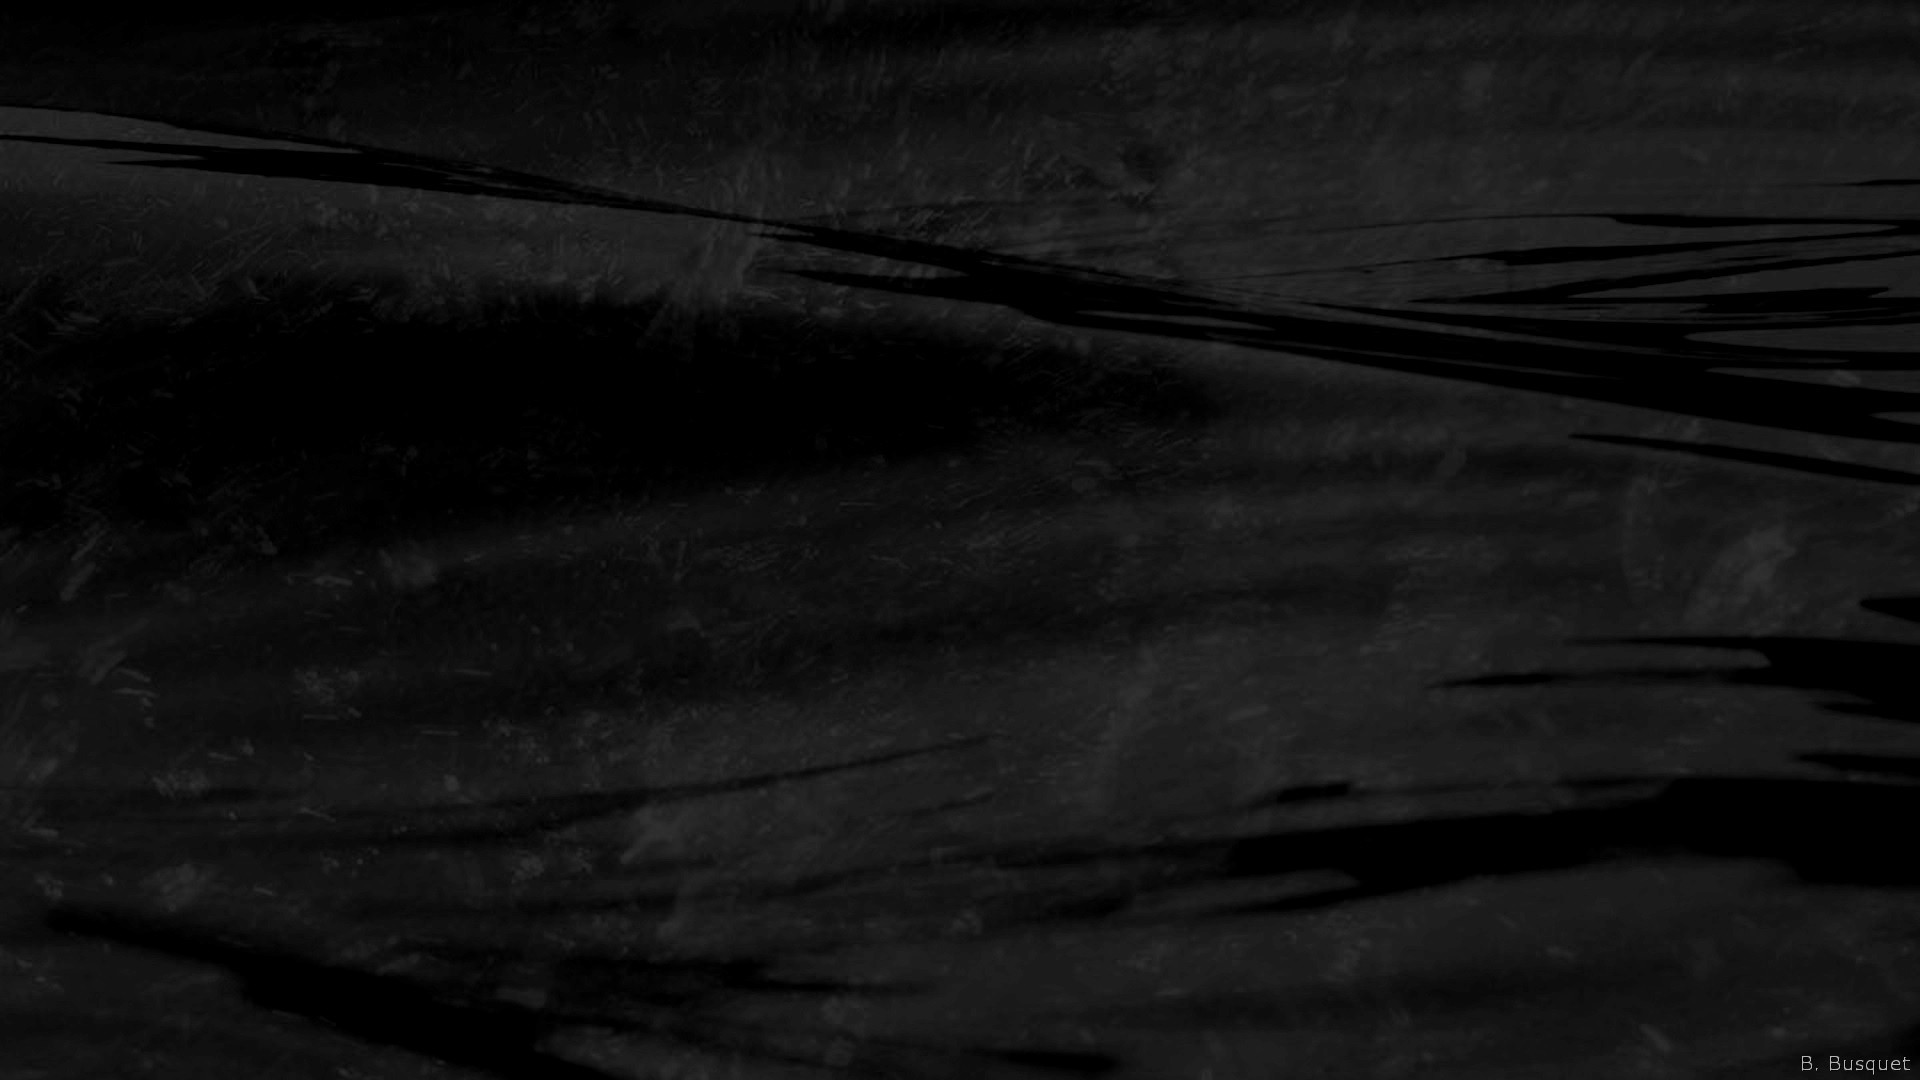 schwarzwassertapete,schwarz,monochrome fotografie,weiß,schwarz und weiß,dunkelheit